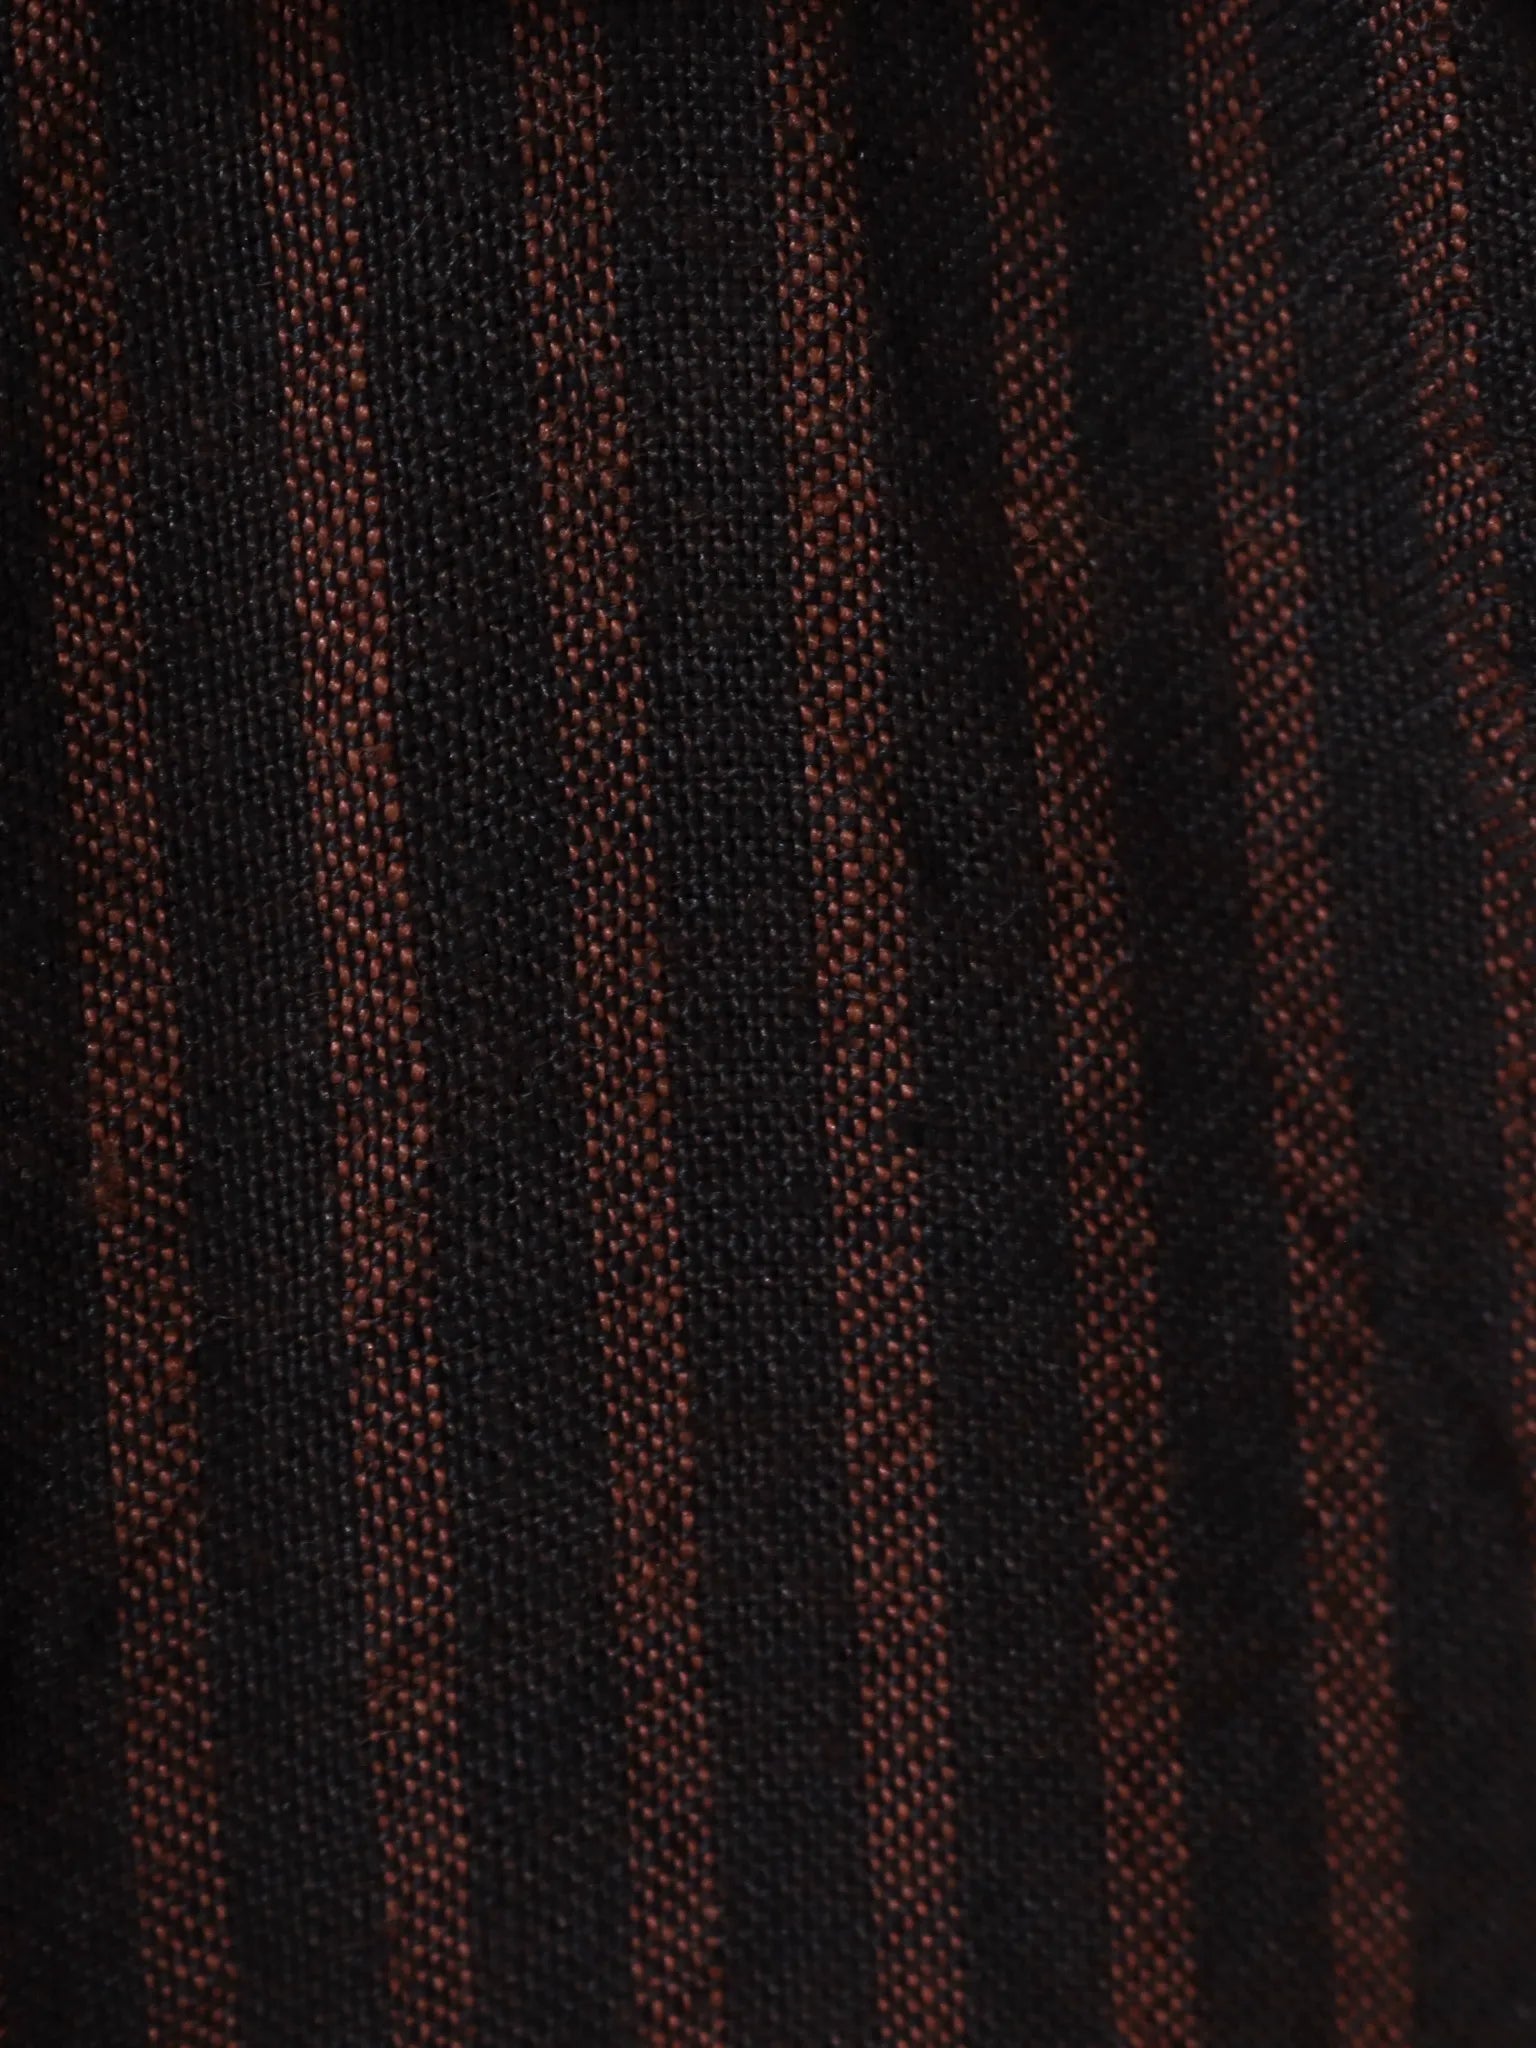 biek-verstappen-shirt-irish-linen-brown-red-6